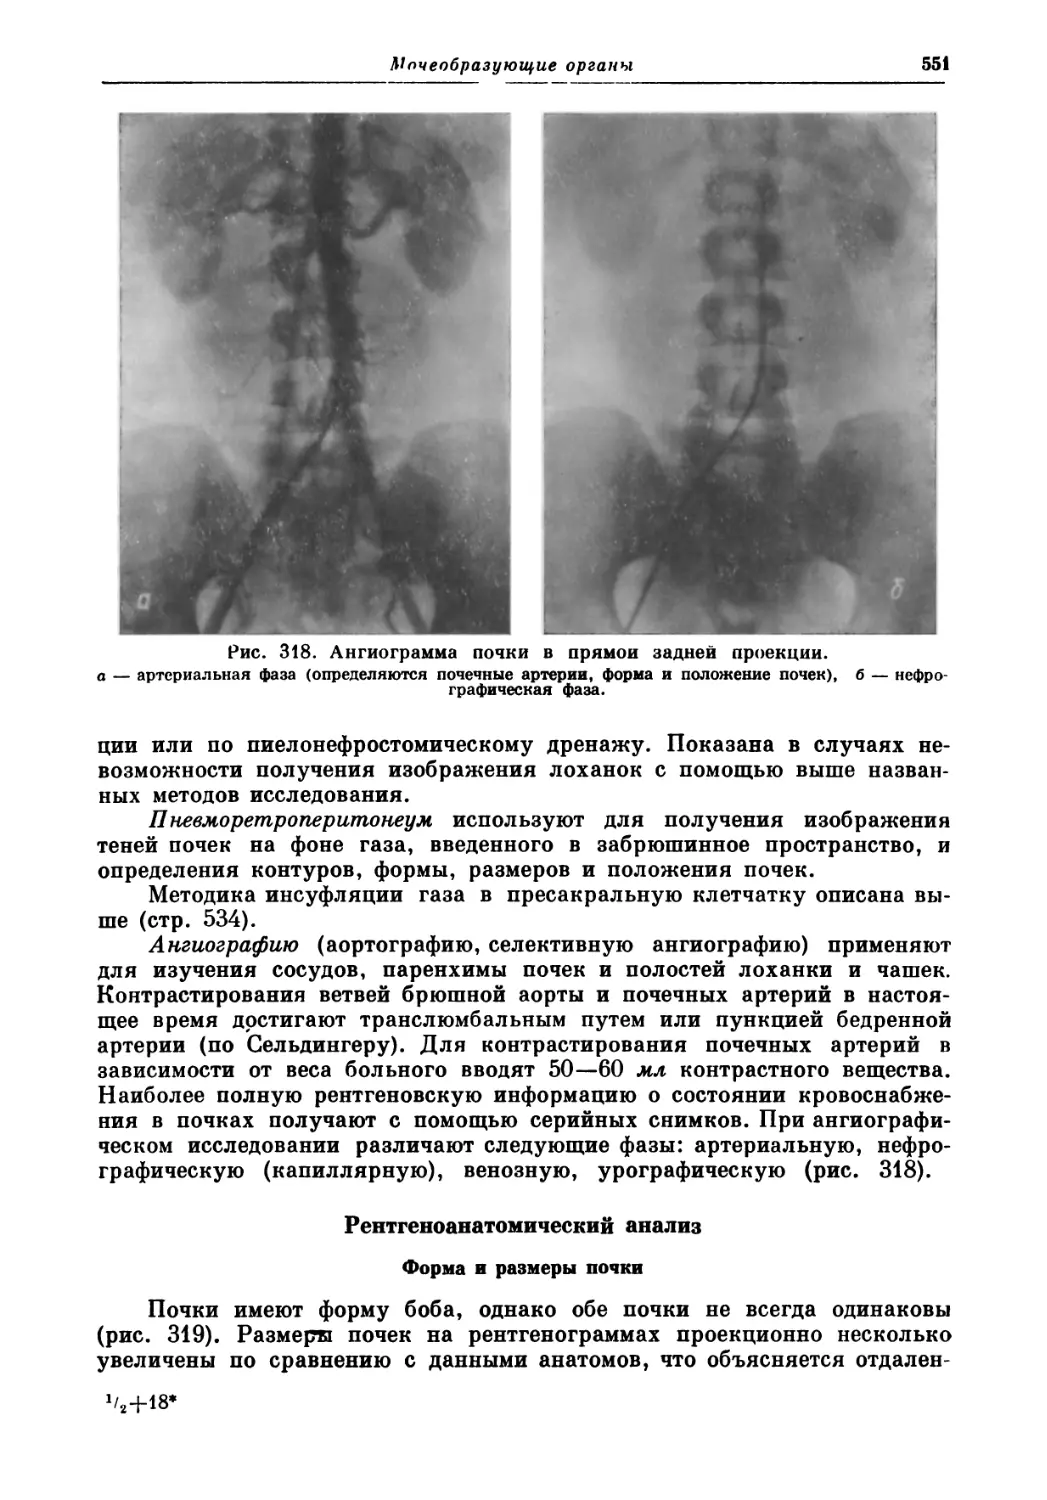 Рентгеноанатомический анализ
Форма и размеры почки